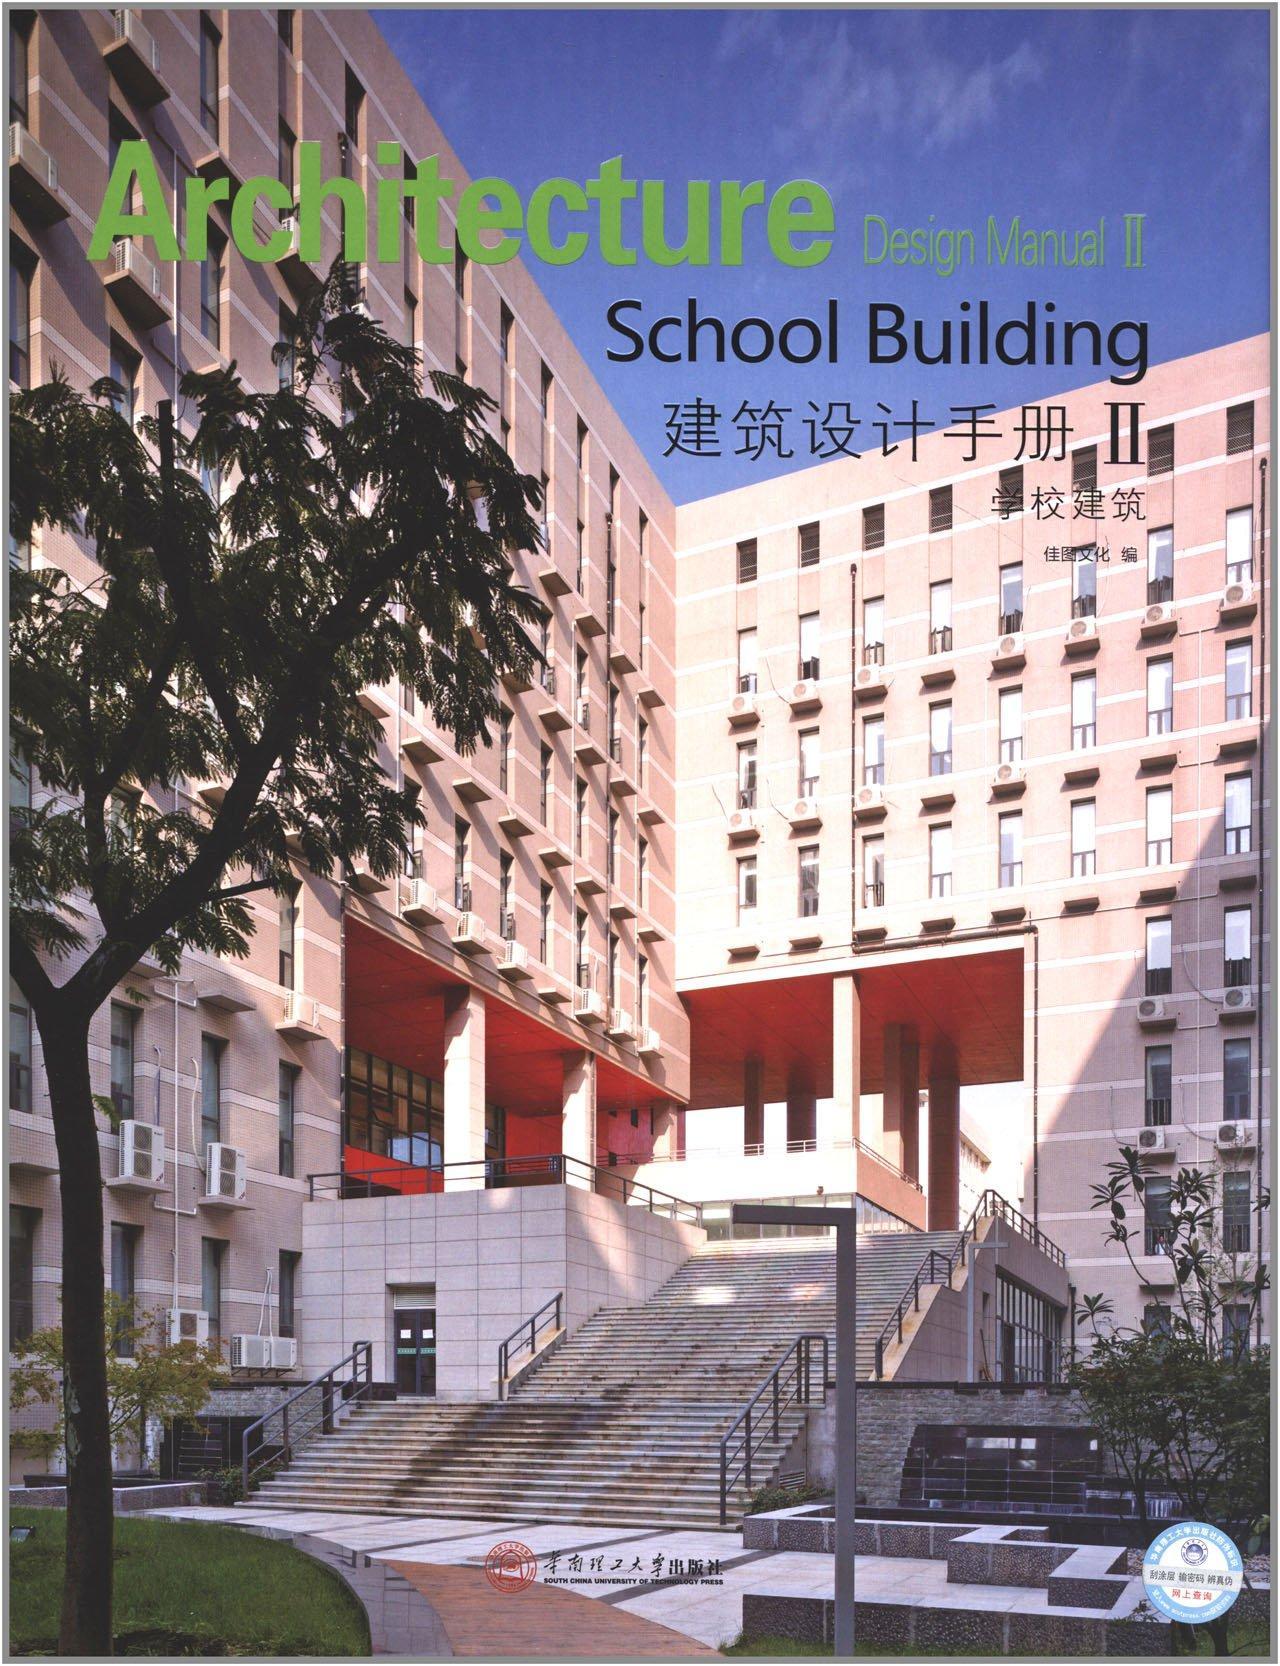 建筑设计手册:Ⅱ:Ⅱ:学校建筑:School building佳图文化  建筑书籍